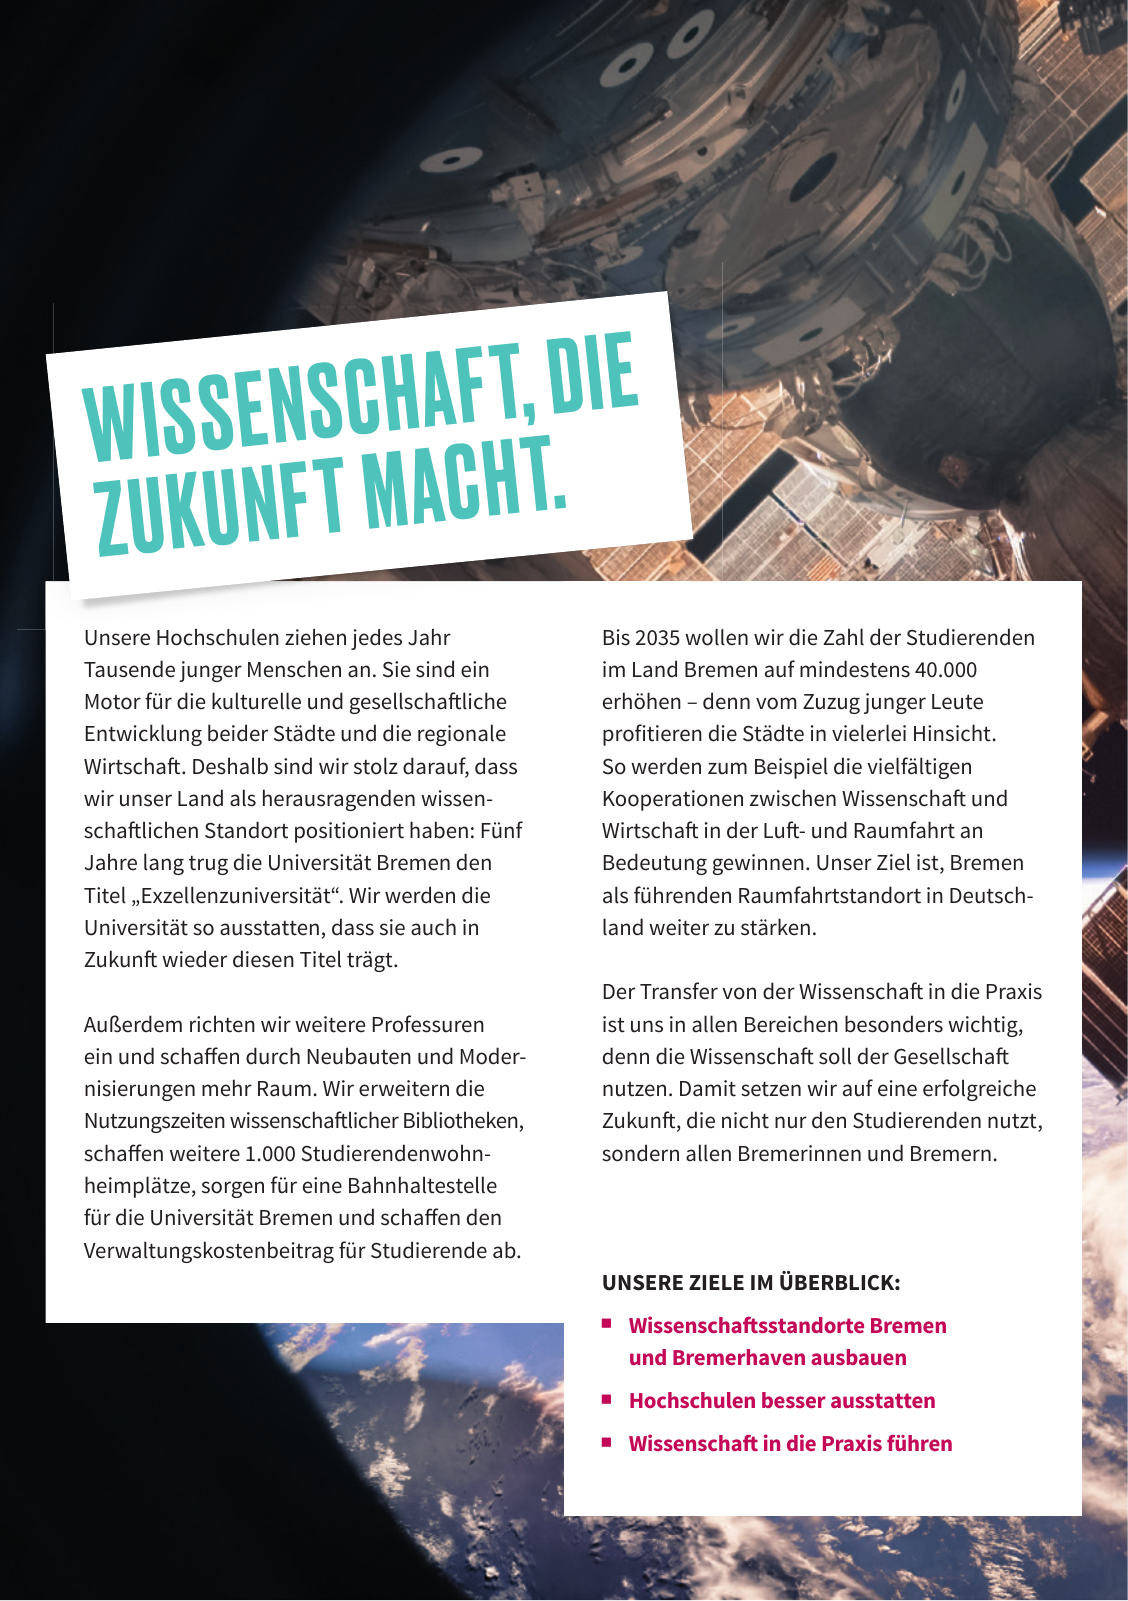 Vorschau SPD Kurzwahlprogramm - April 2019 Seite 16